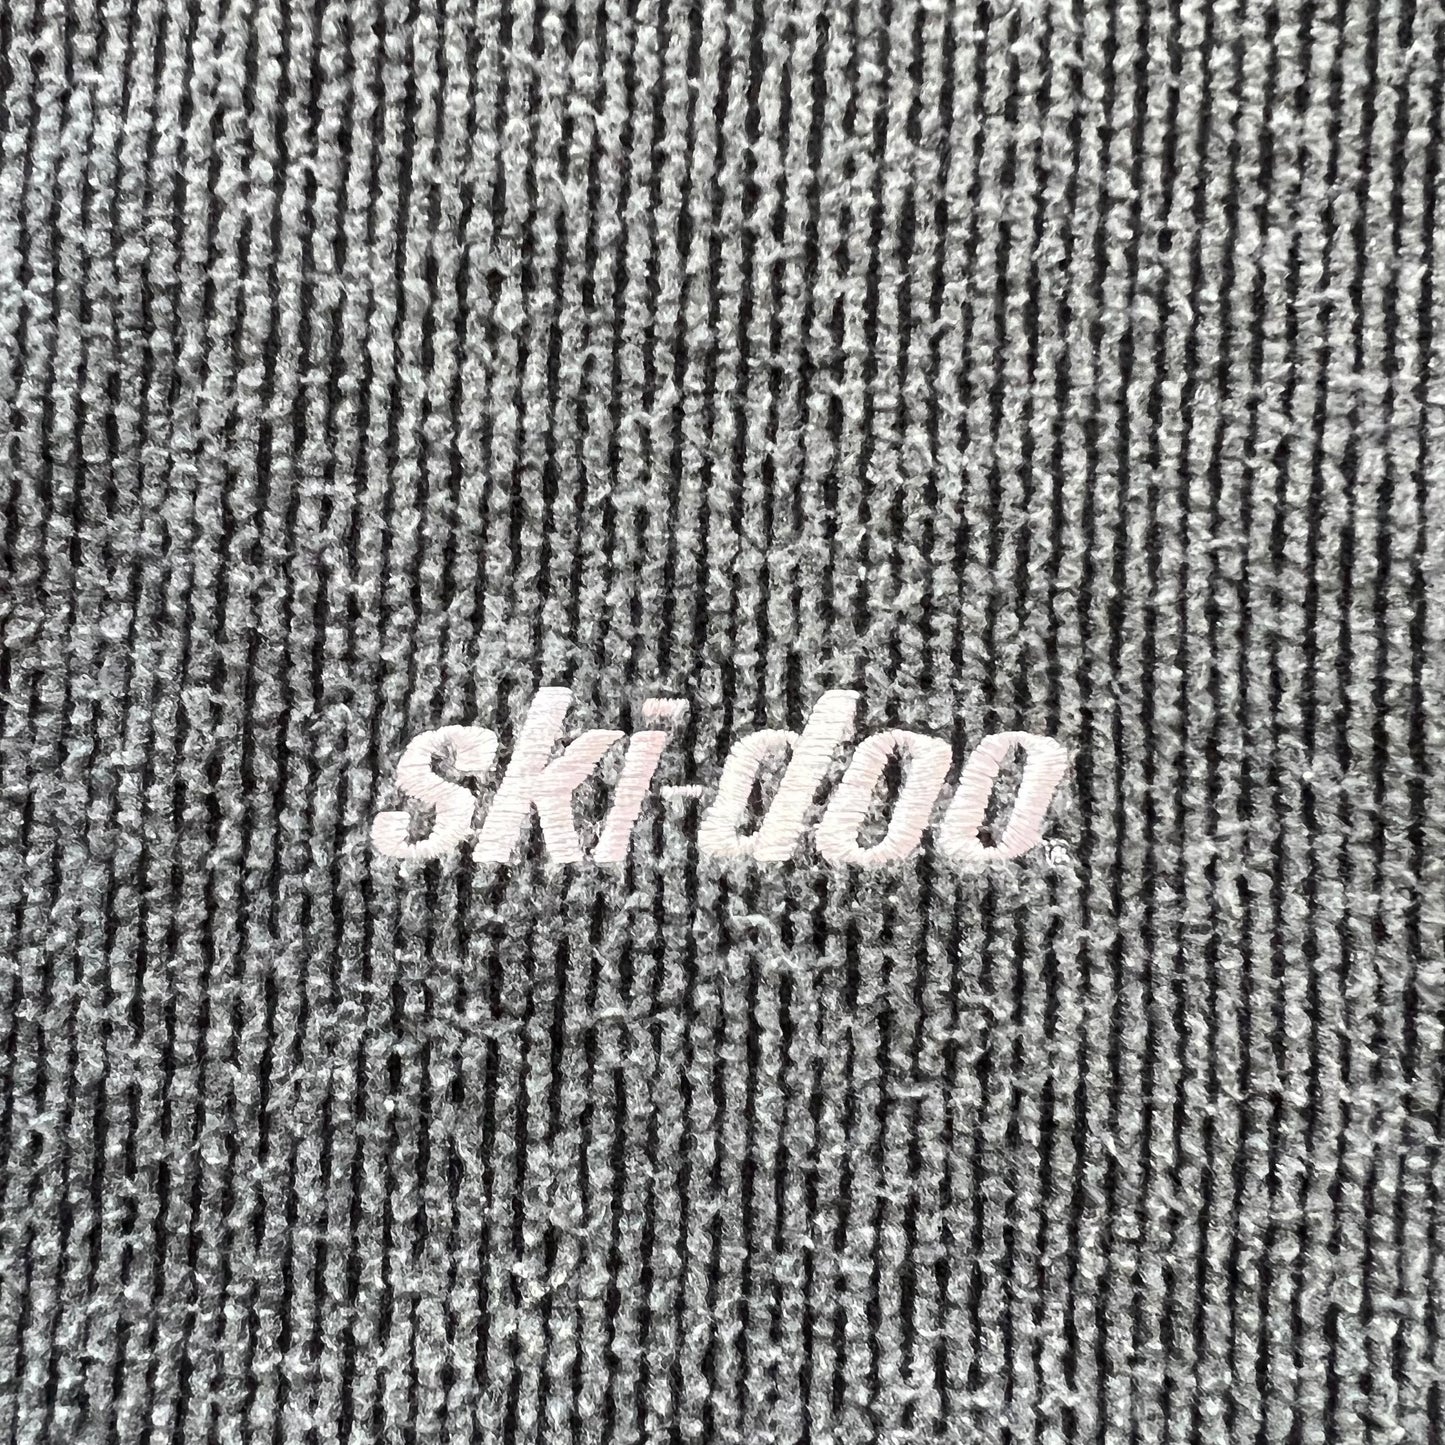 90’s ski-doo "TEAM VINCENT" HALF ZIP CORDUROY SWEATSHIRT